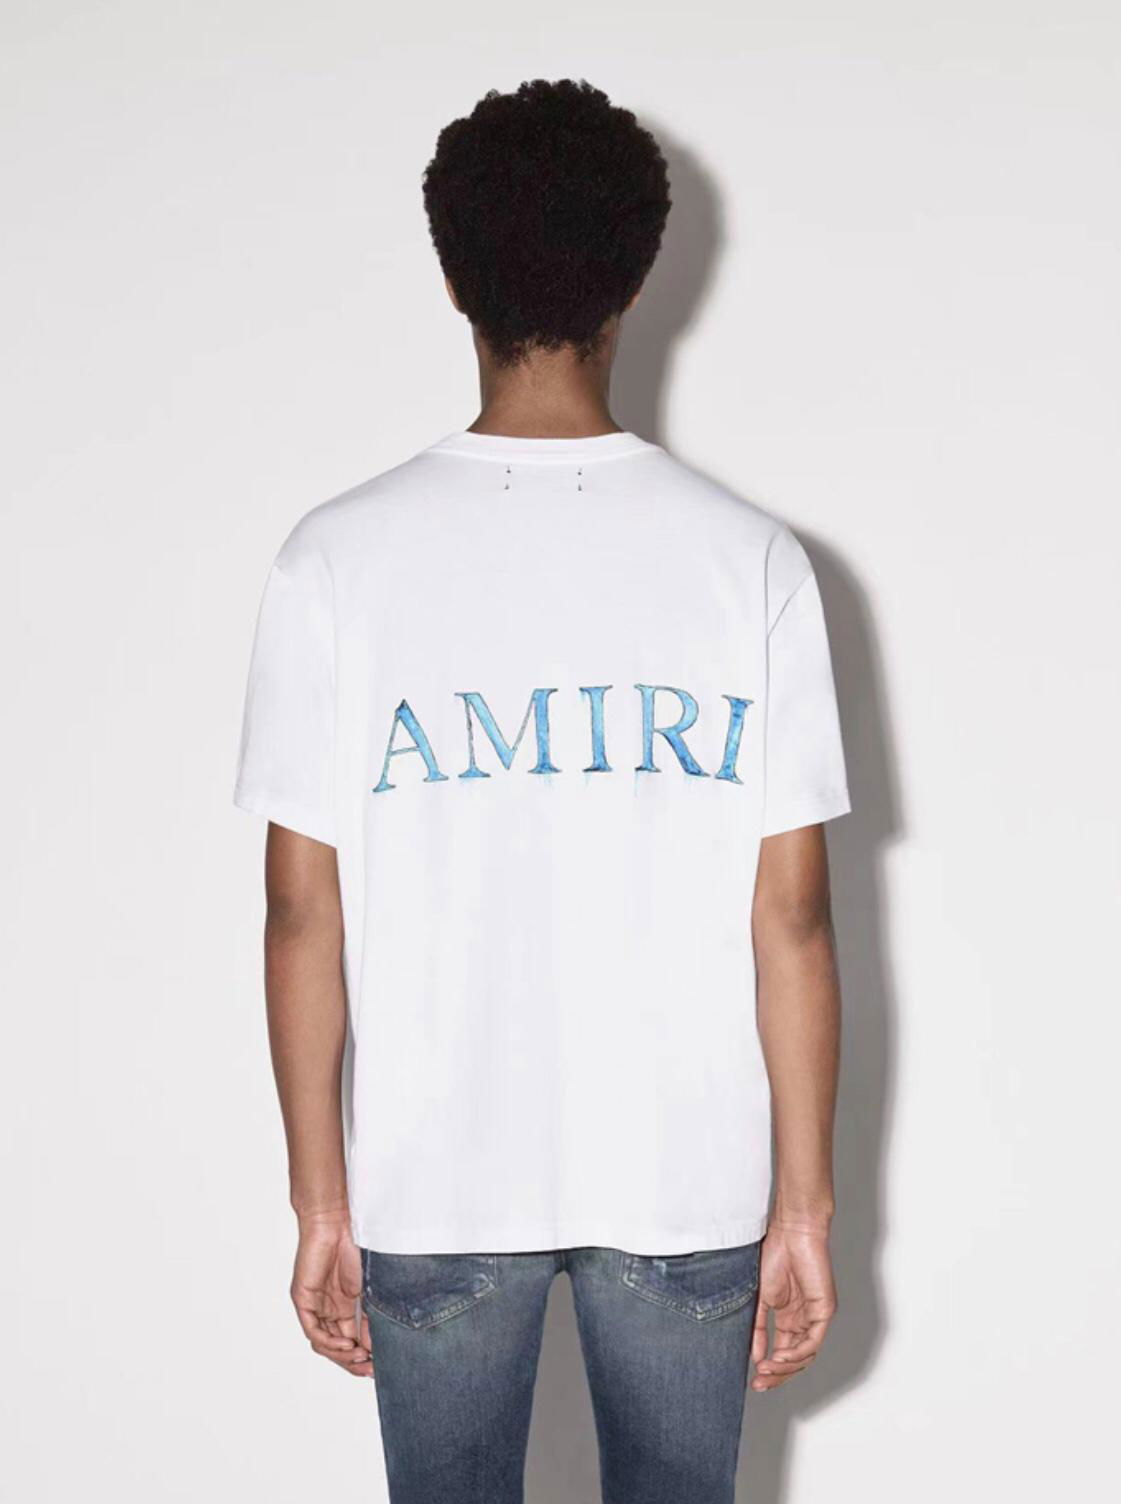 Amiri logo-print Cotton T-shirt Cheap Men Fashion jersey Tee white 2